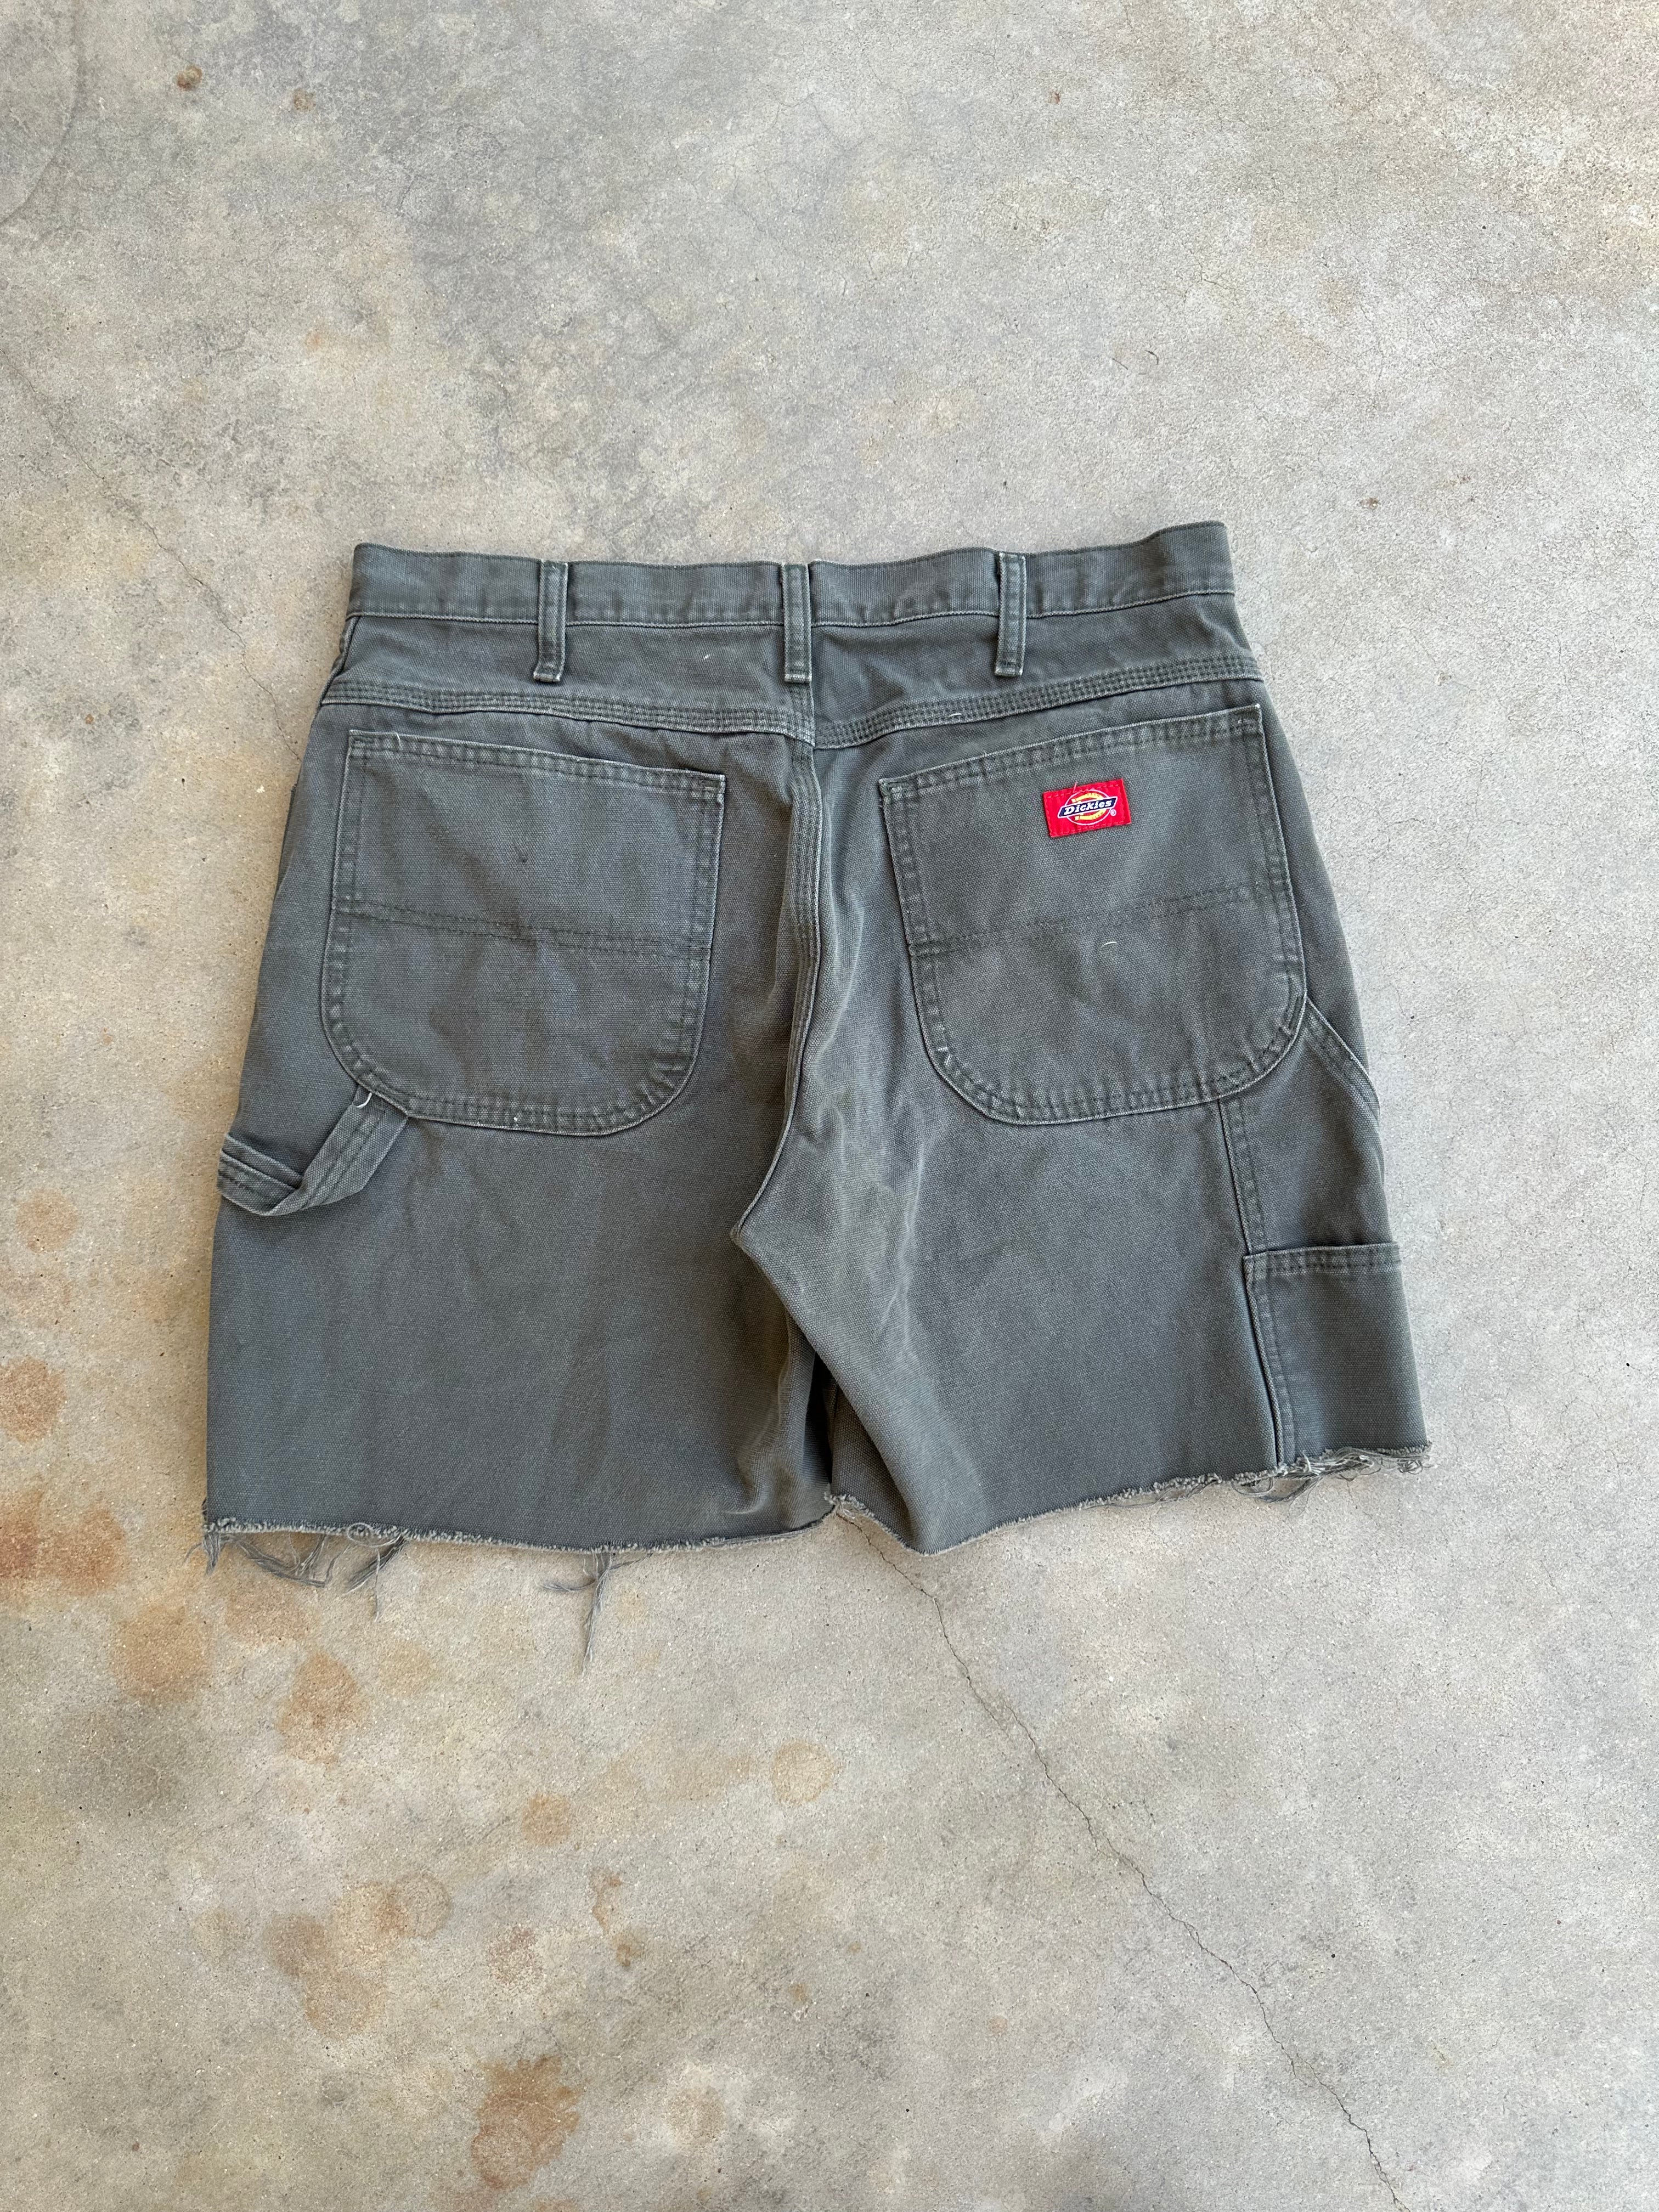 Vintage Dickies Carpenter Shorts (34"x6.5")